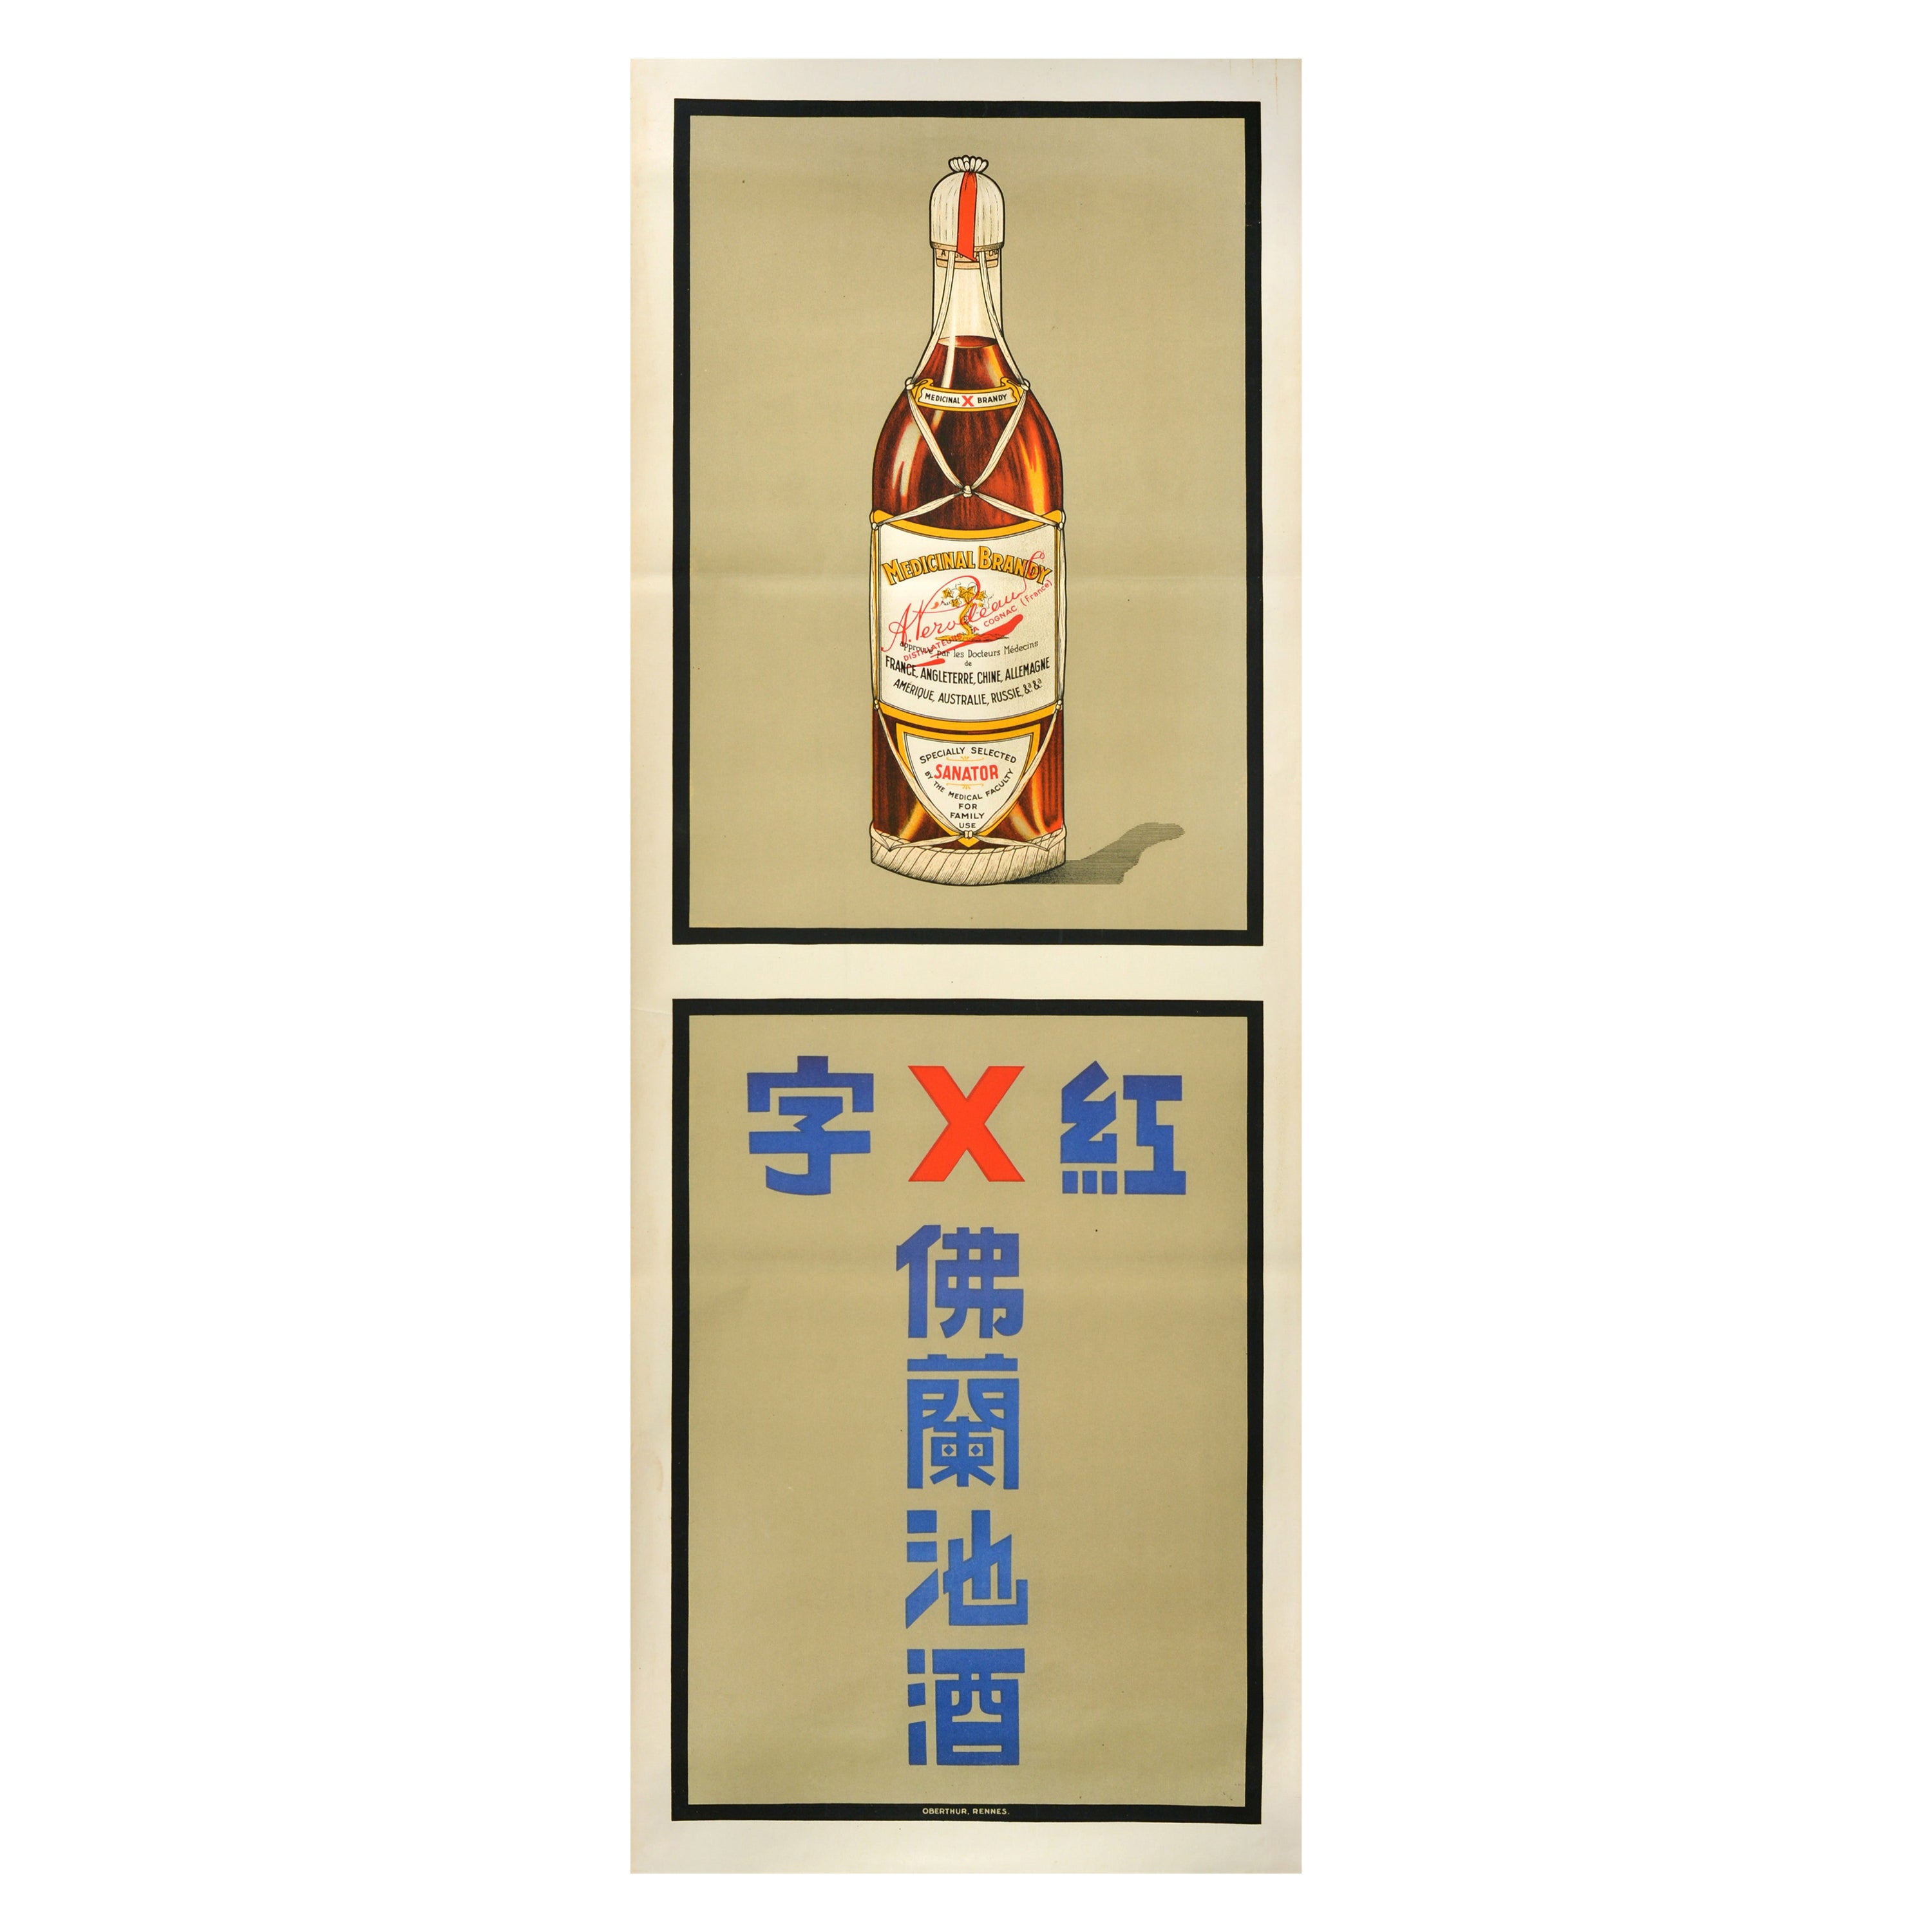 Affiche publicitaire originale pour les boissons médicales de Perodeau Sanator